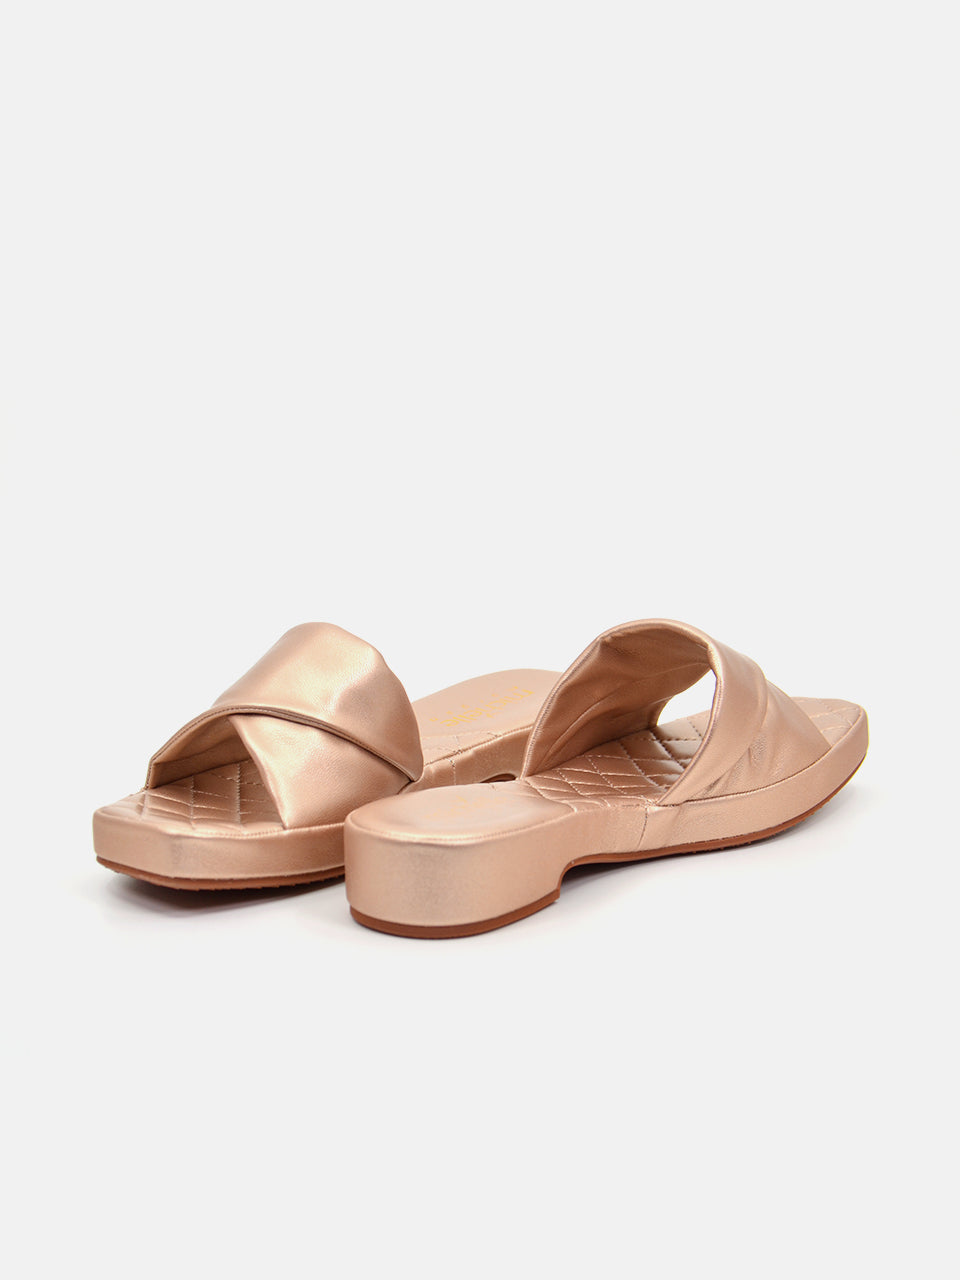 Michelle Morgan 114ZD612 Women's Flat Sandals #color_Pink